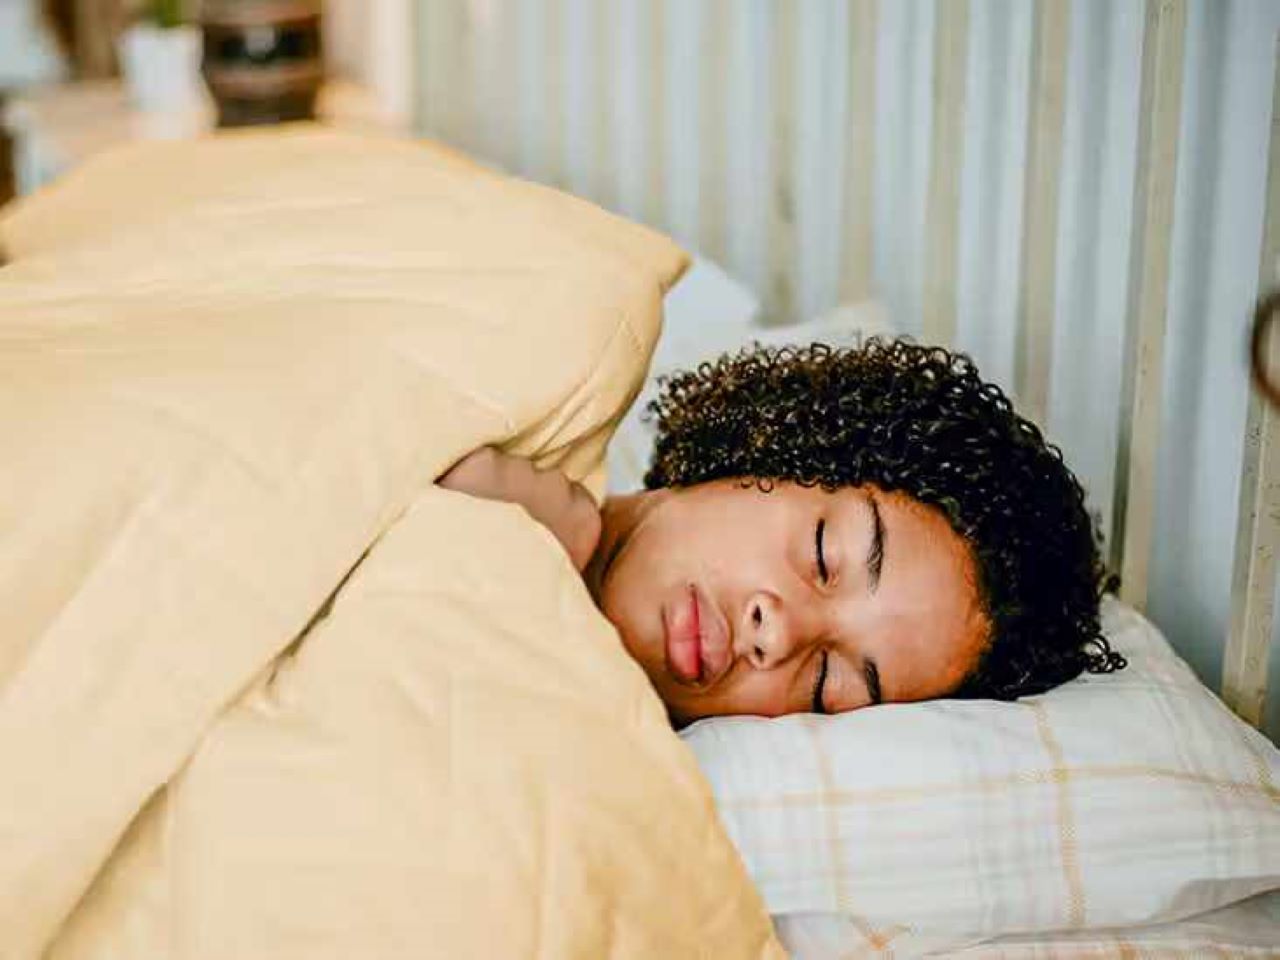 Posizione per dormire meglio: ecco qual è secondo gli esperti